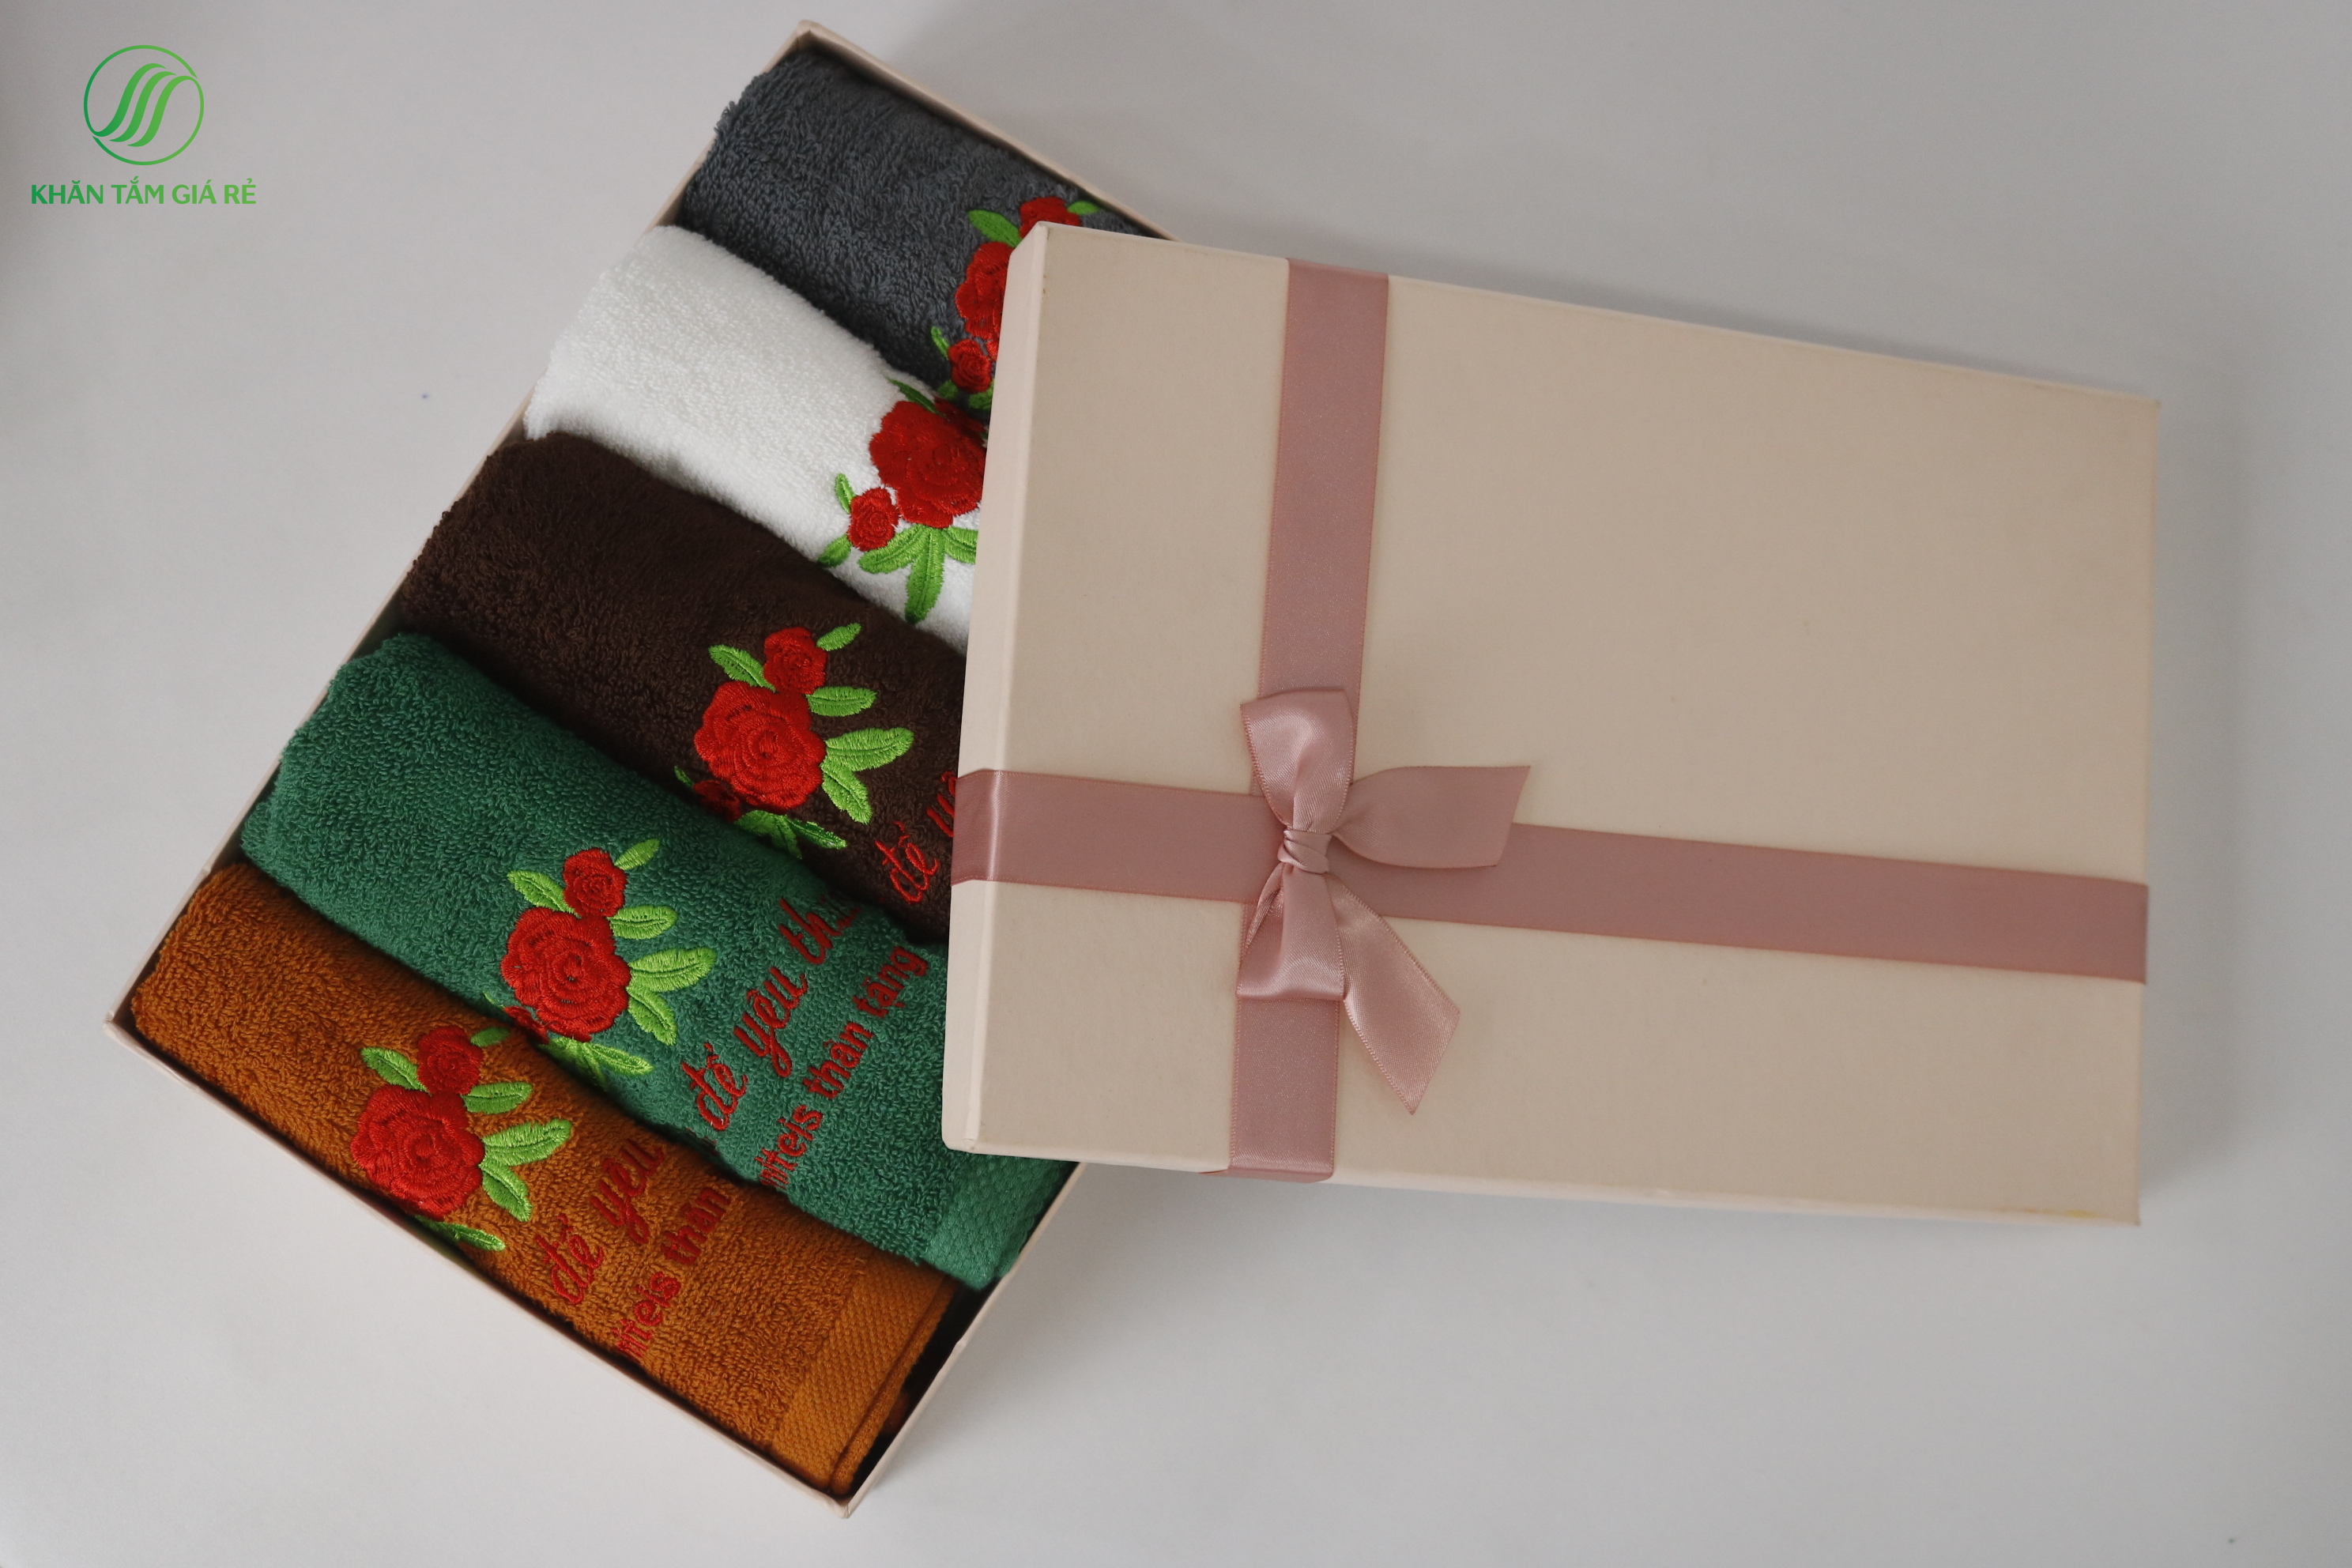 Nên chọn công ty, nhà máy sản xuất khăn quà tặng nào để đặt khăn quà tặng cho khách hàng?